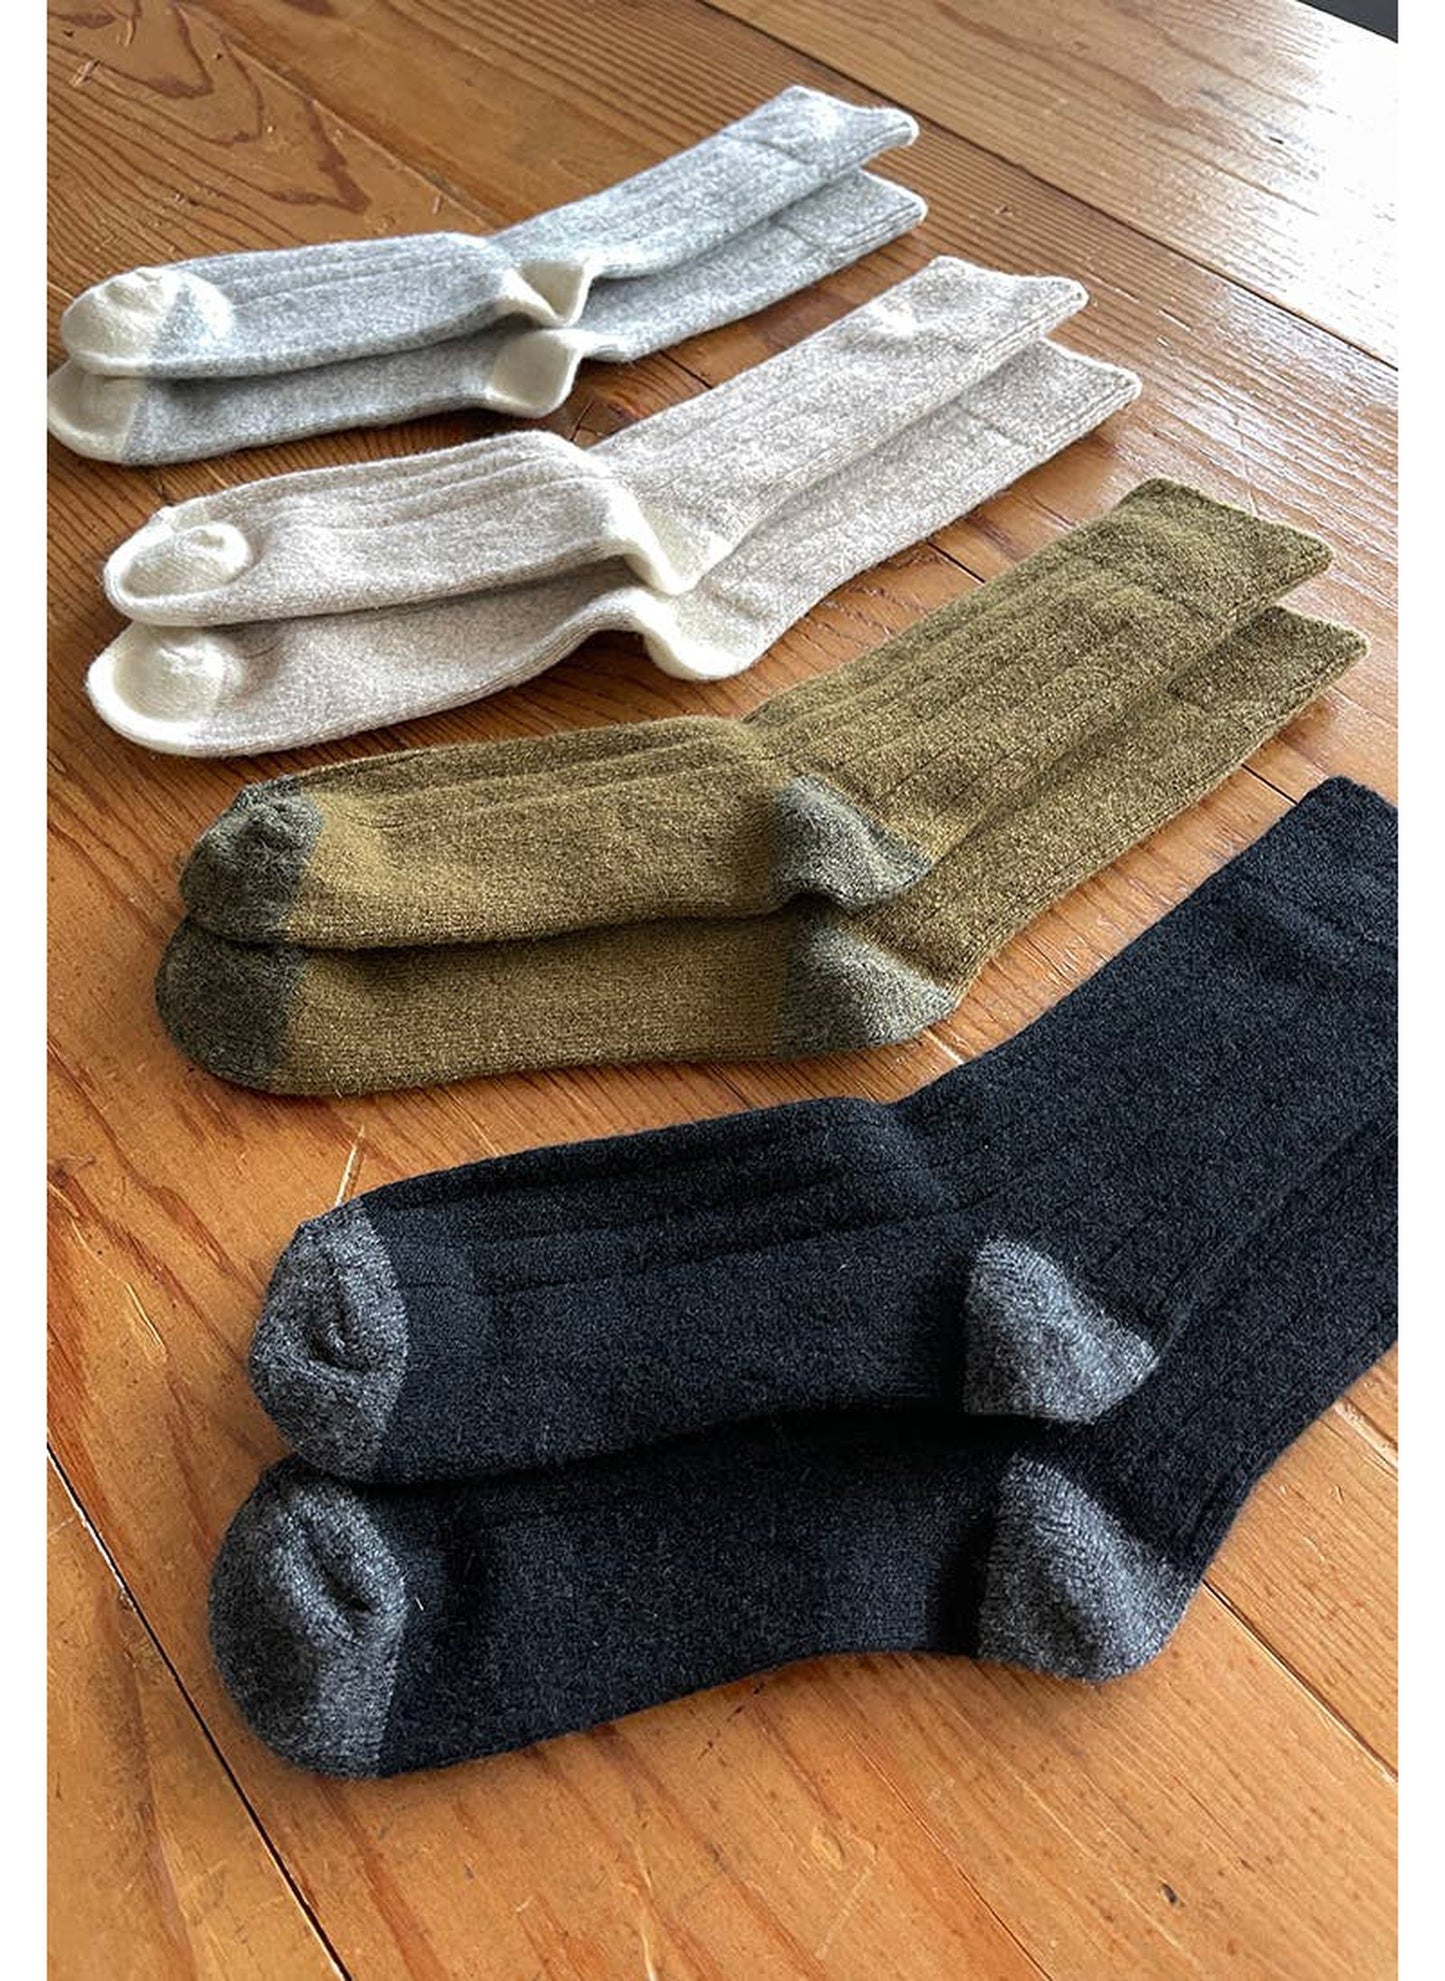 Le Bon Shoppe Classic Cashmere Socks - Fawn